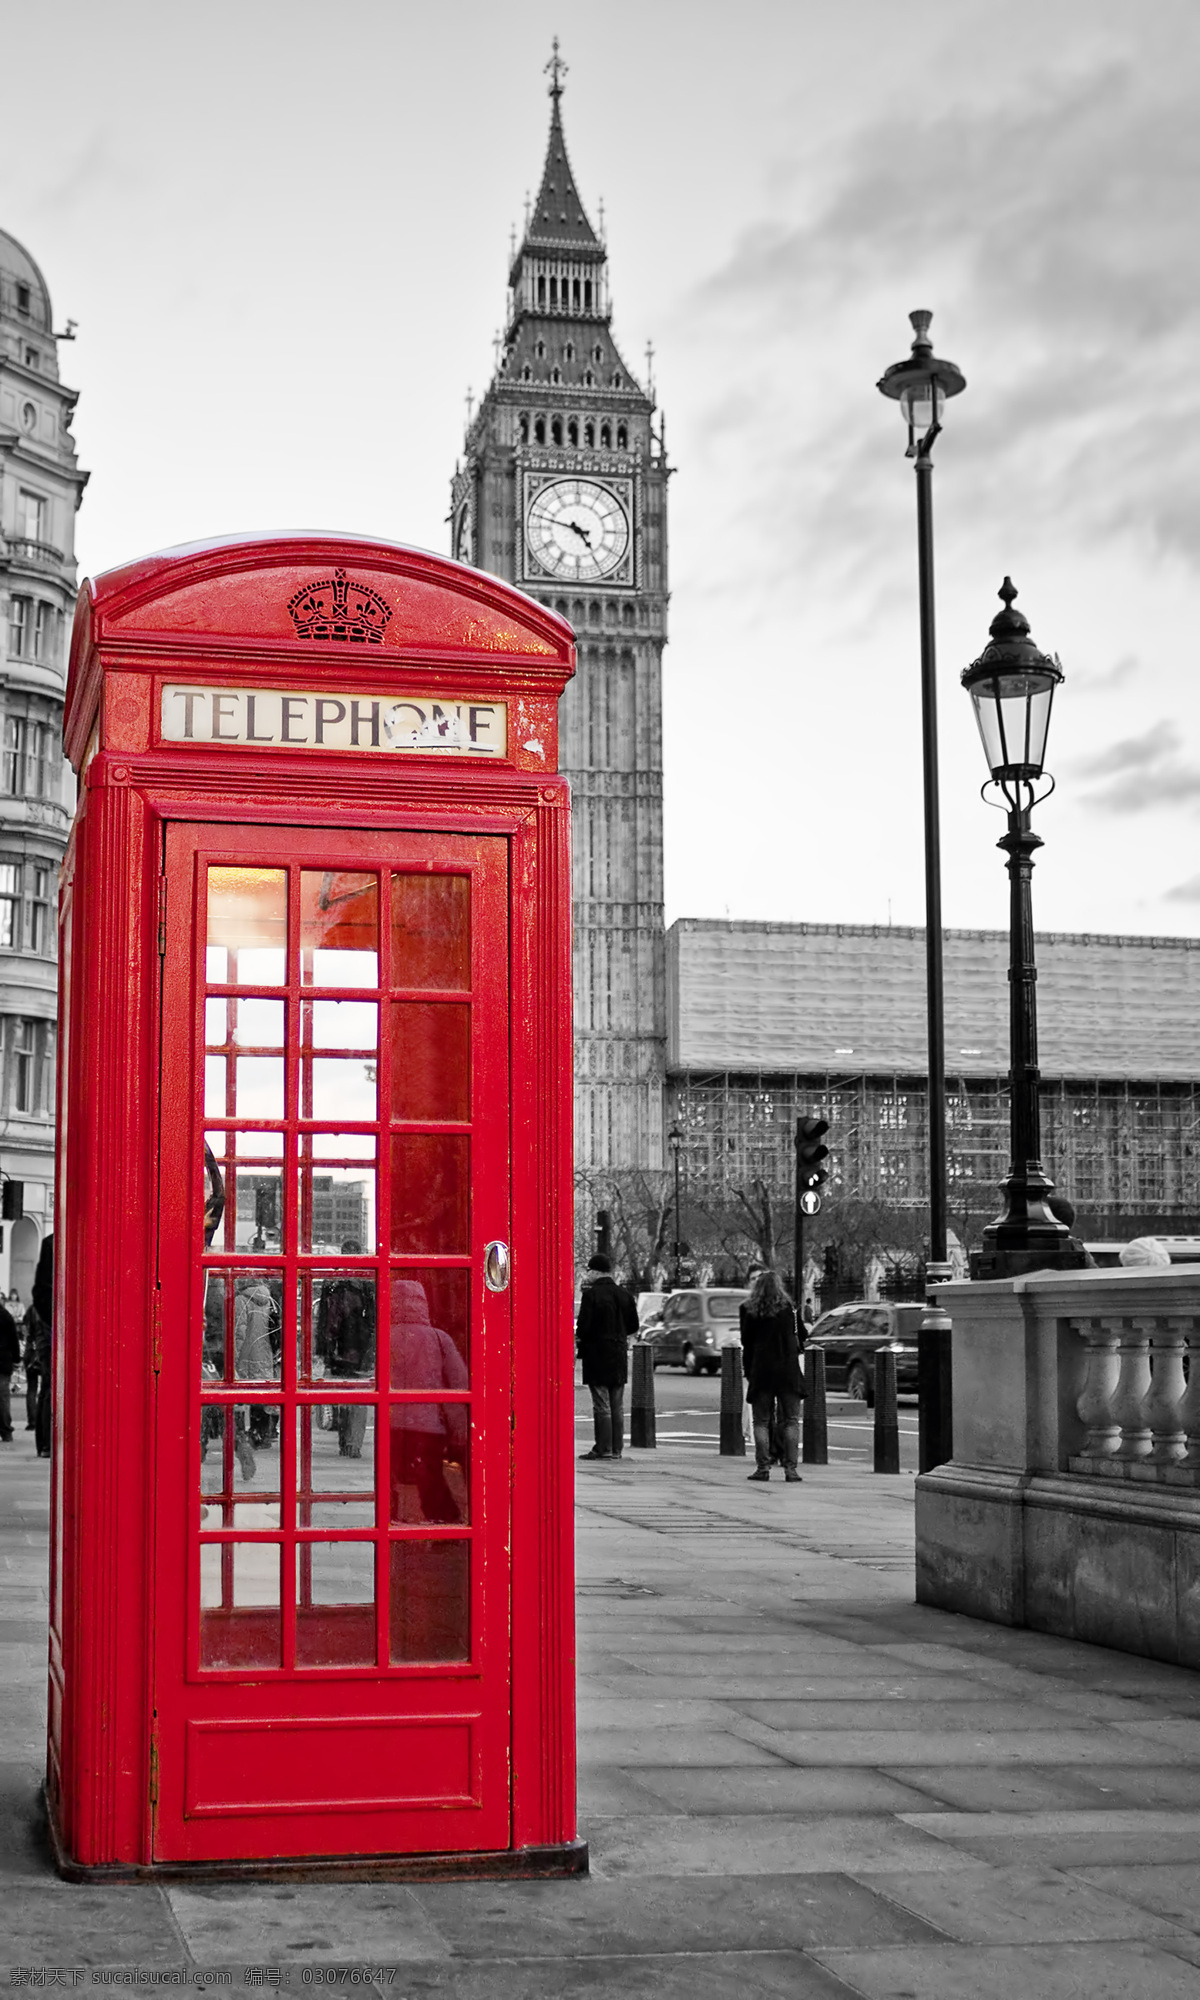 电话亭 钟楼 伦敦街道 伦敦风景 欧美风格 英国风景 名胜古迹 外国风景 旅游图片 风景名胜 风景图片